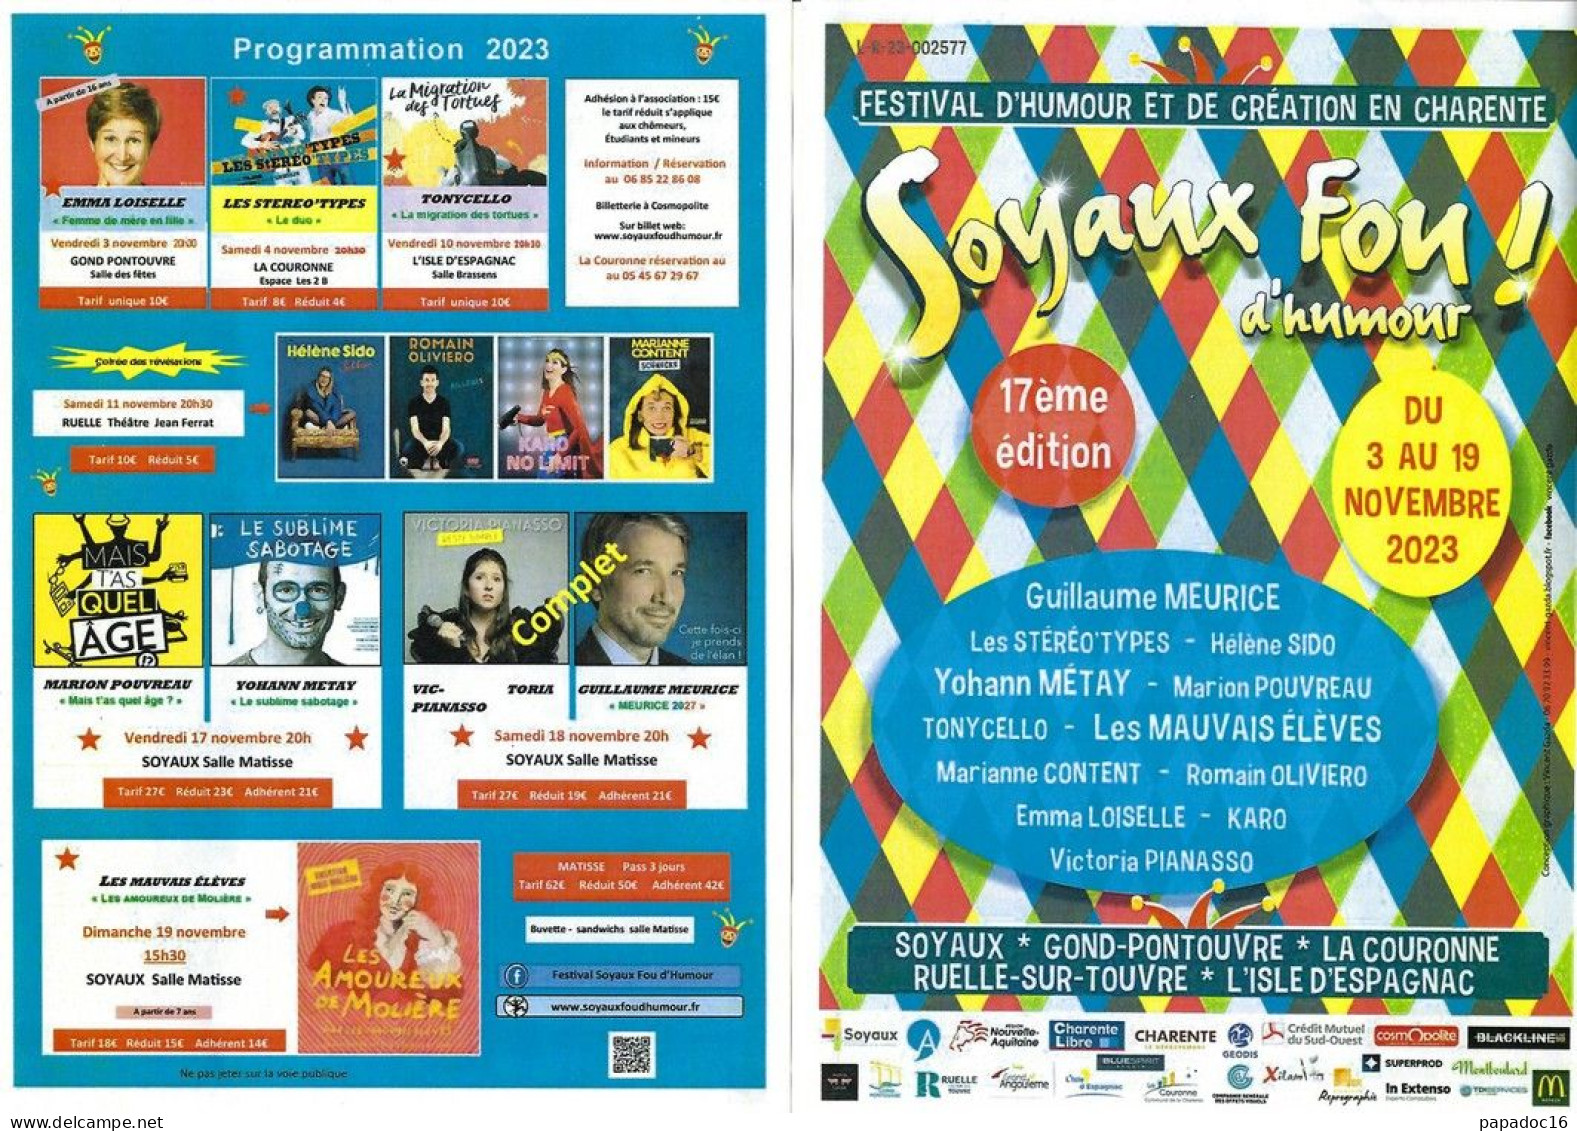 Flyer - Soyaux Fou D'humour ! - 17e Festival D'humour Et De Création En Charente - 3-19 Novembre 2023 - Publicités